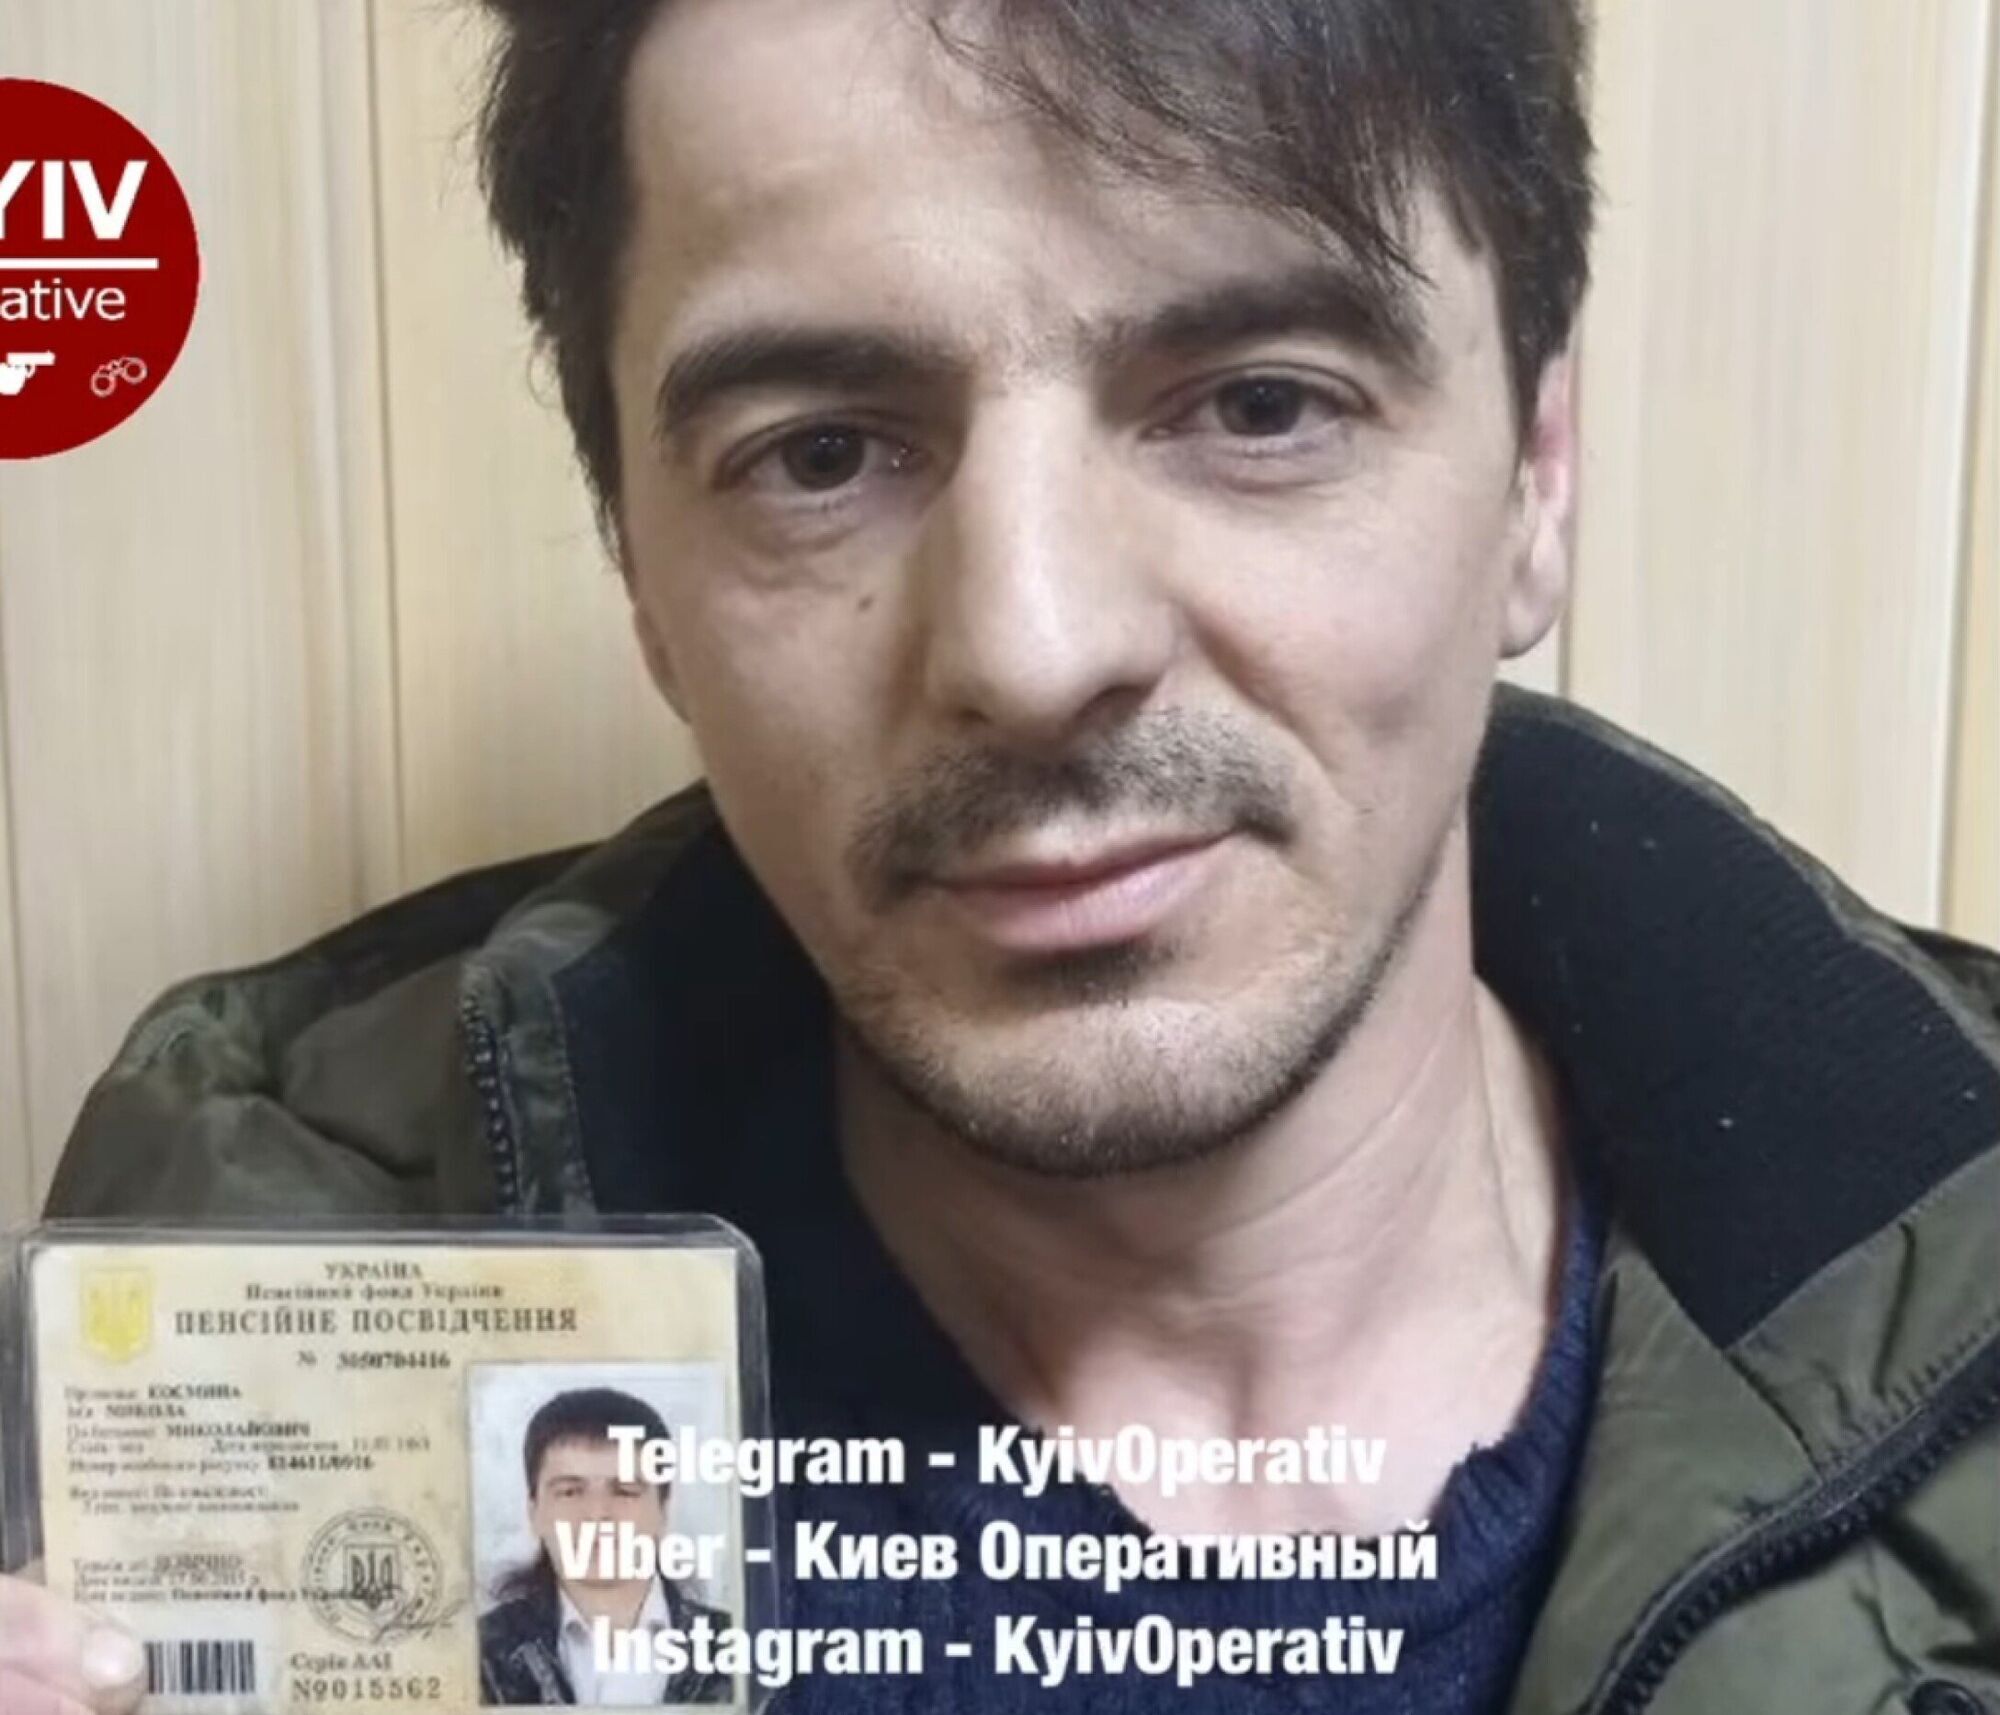 Стала известна судьба Андрея Мацевко после задержания полицией: звезда "Х-Фактора" хотел попасть в метро по фальшивому удостоверению